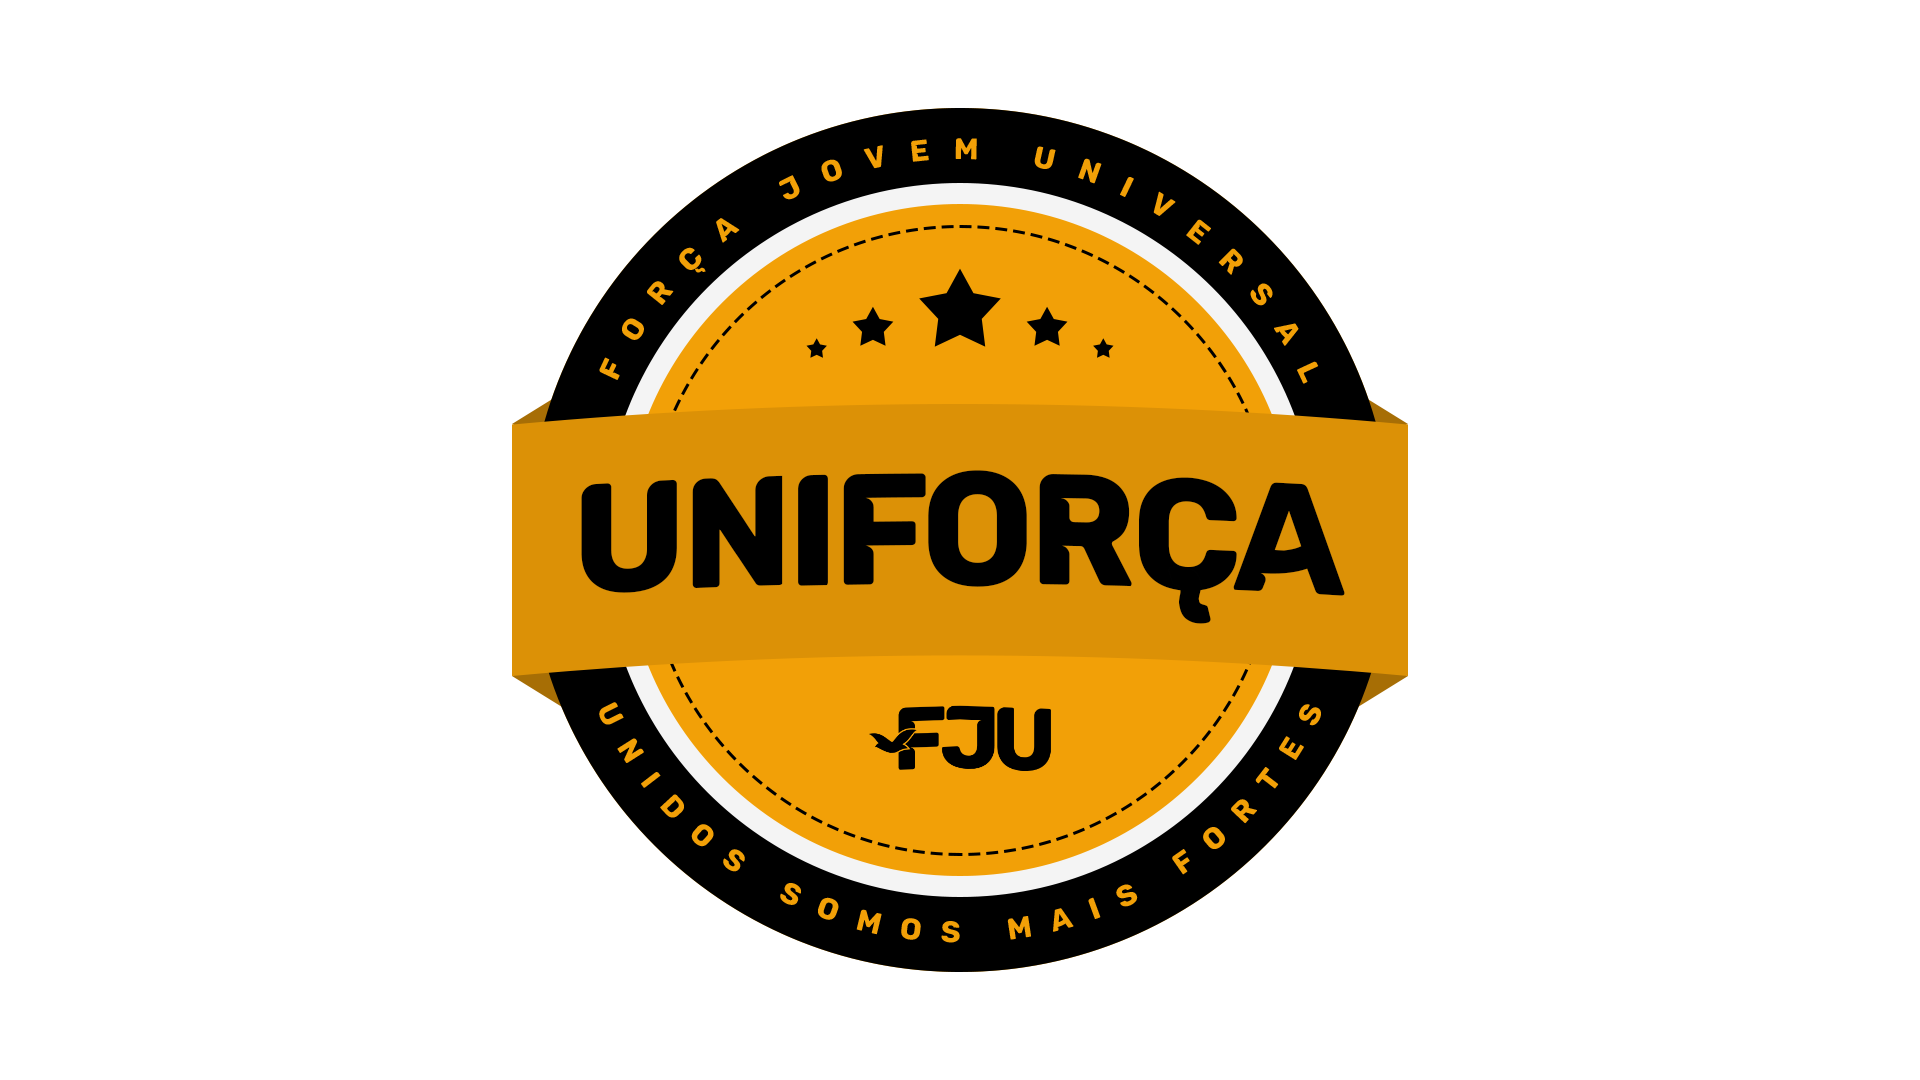 patch_uniforca